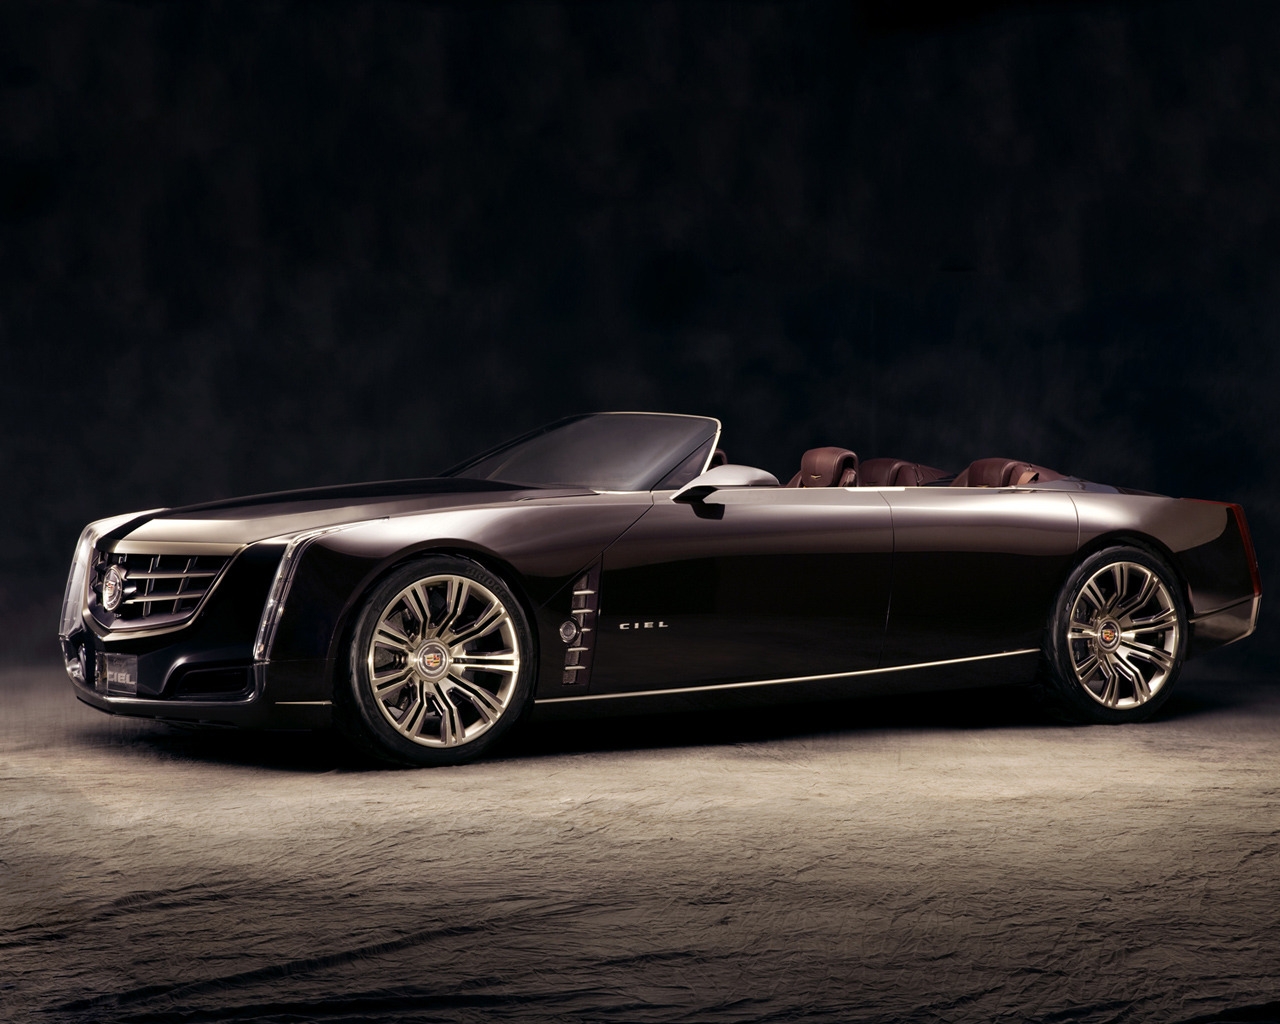 2011 Cadillac Ciel for 1280 x 1024 resolution